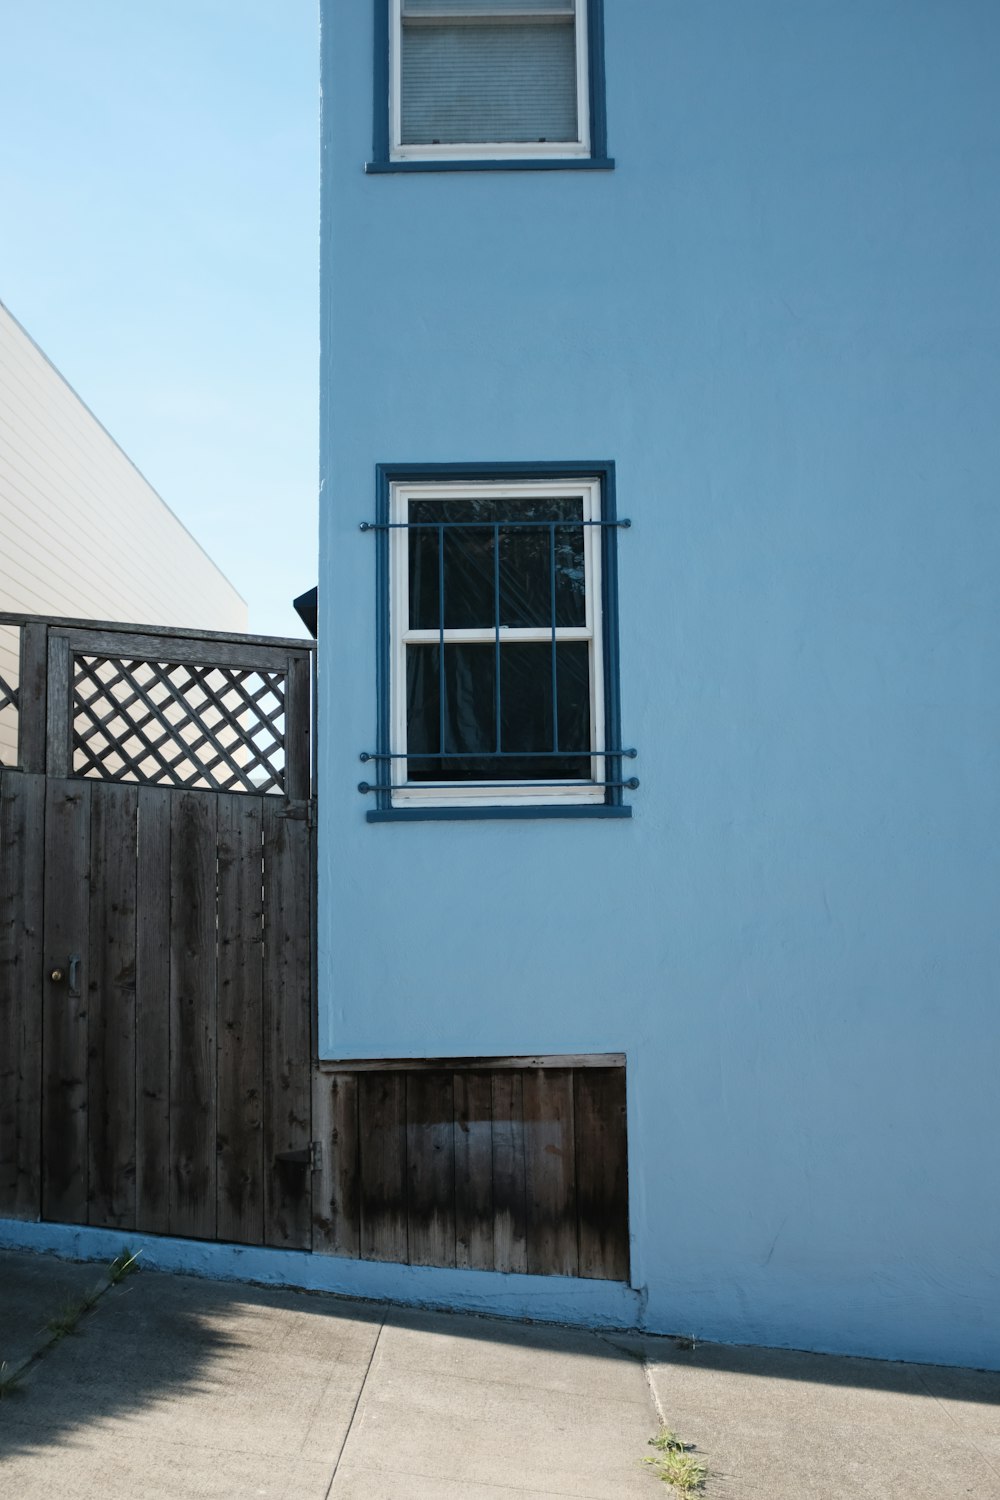 Bâtiment peint en bleu avec fenêtre en verre encadrée de blanc